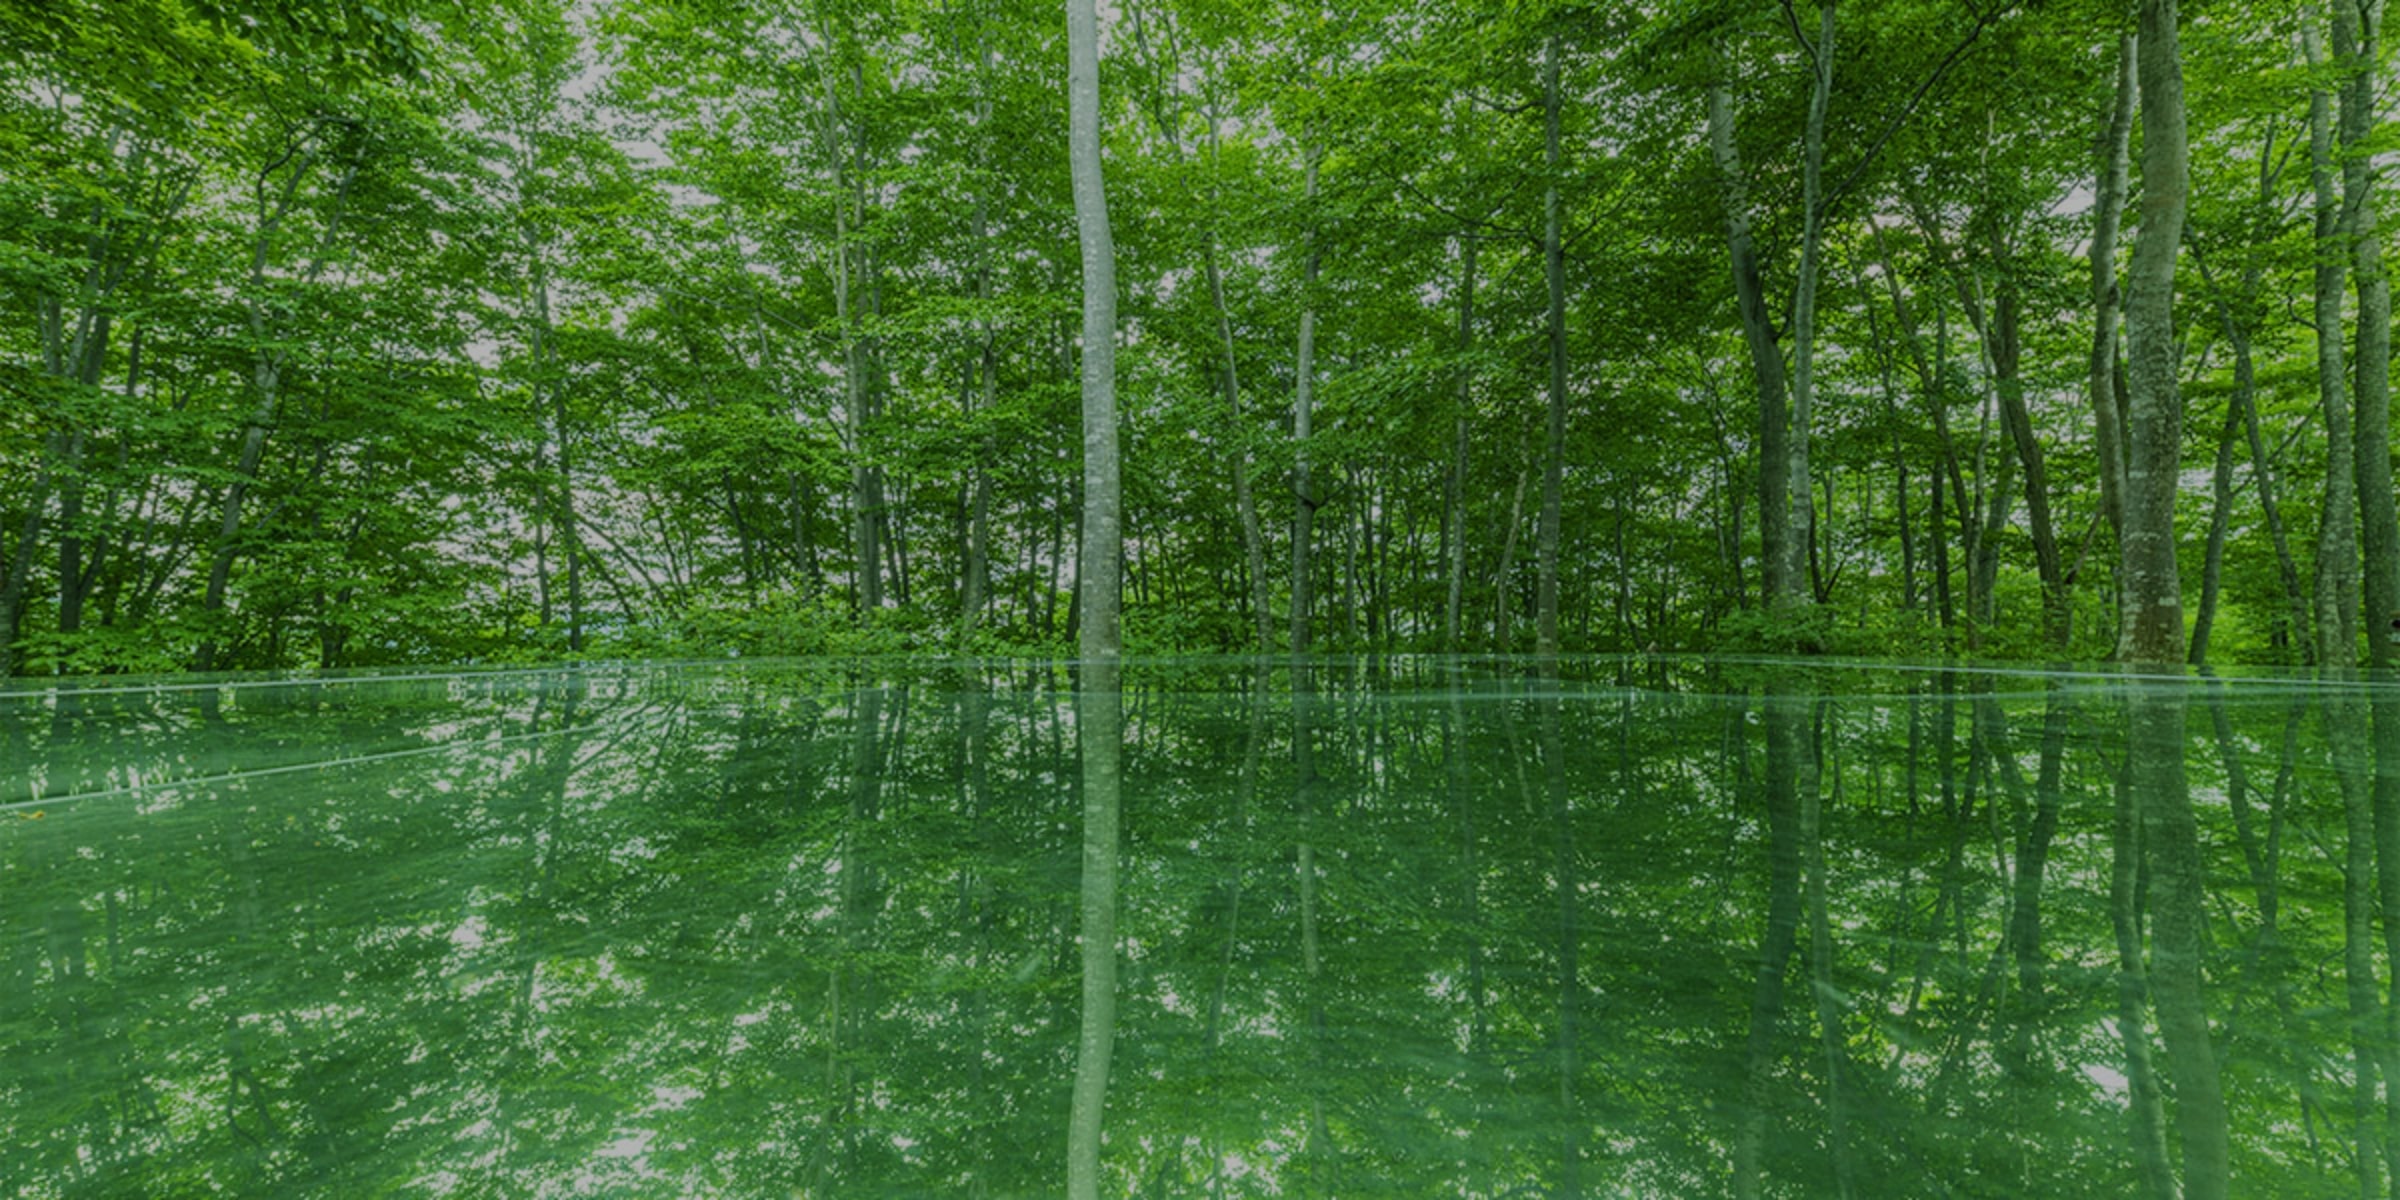 新緑の林と、鏡状の素材で出来ている舞台に木が映り込んでいる画像